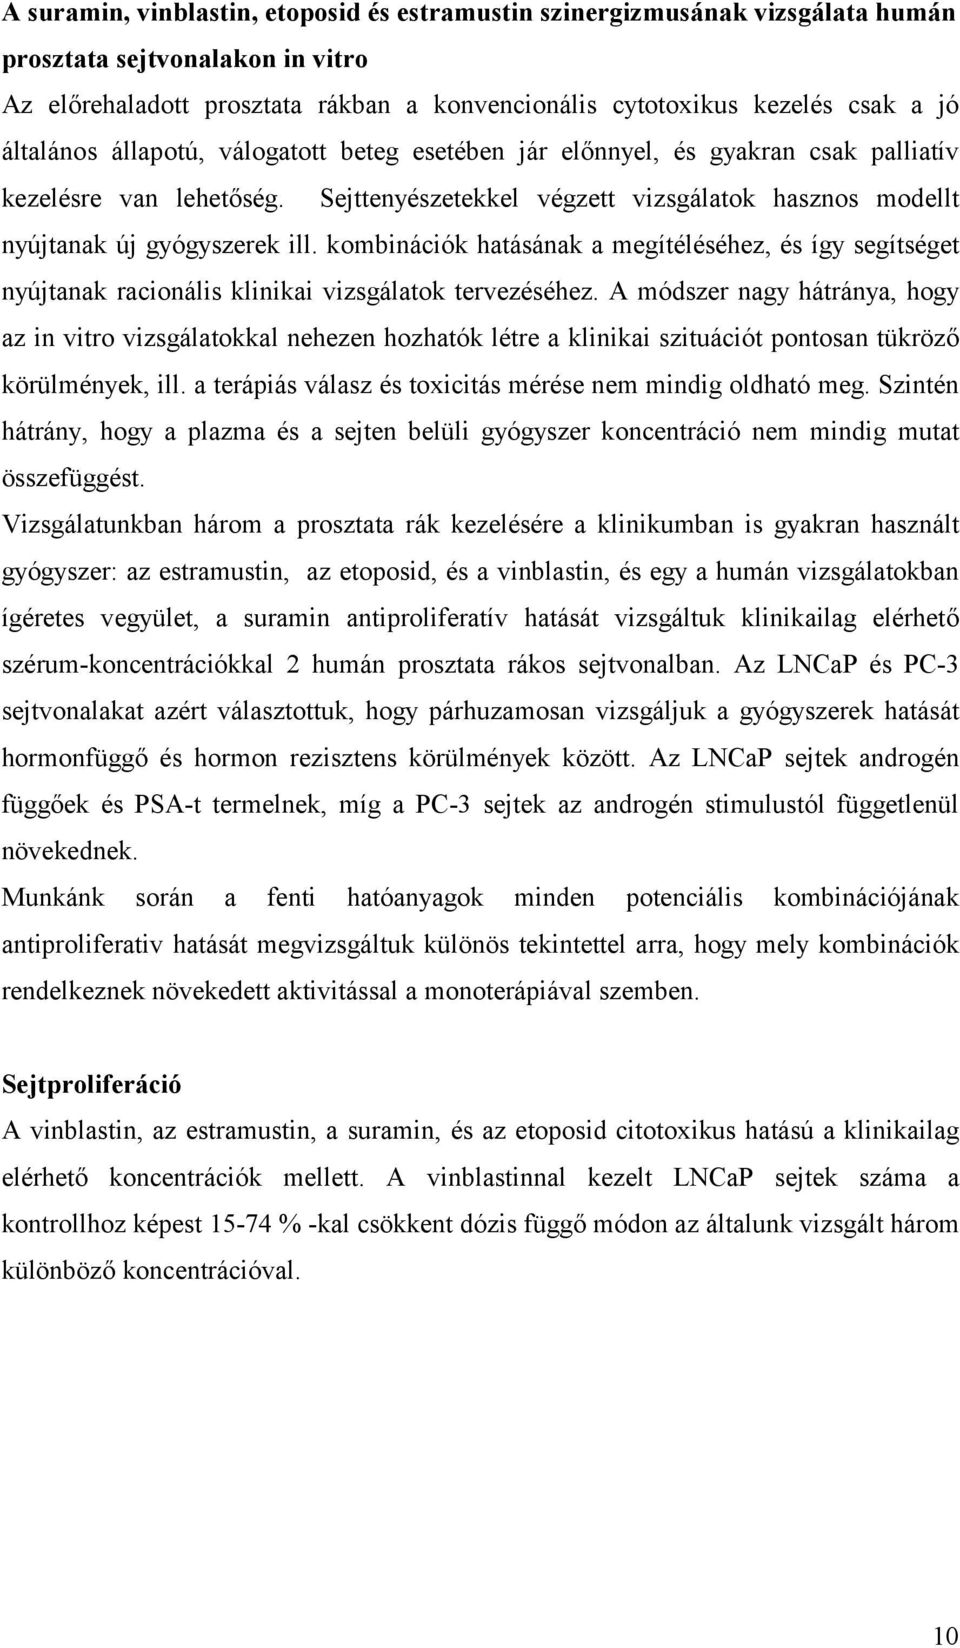 Magyar Onkológusok Társasága - A prosztatarák diagnózisa és gyógyszeres kezelése